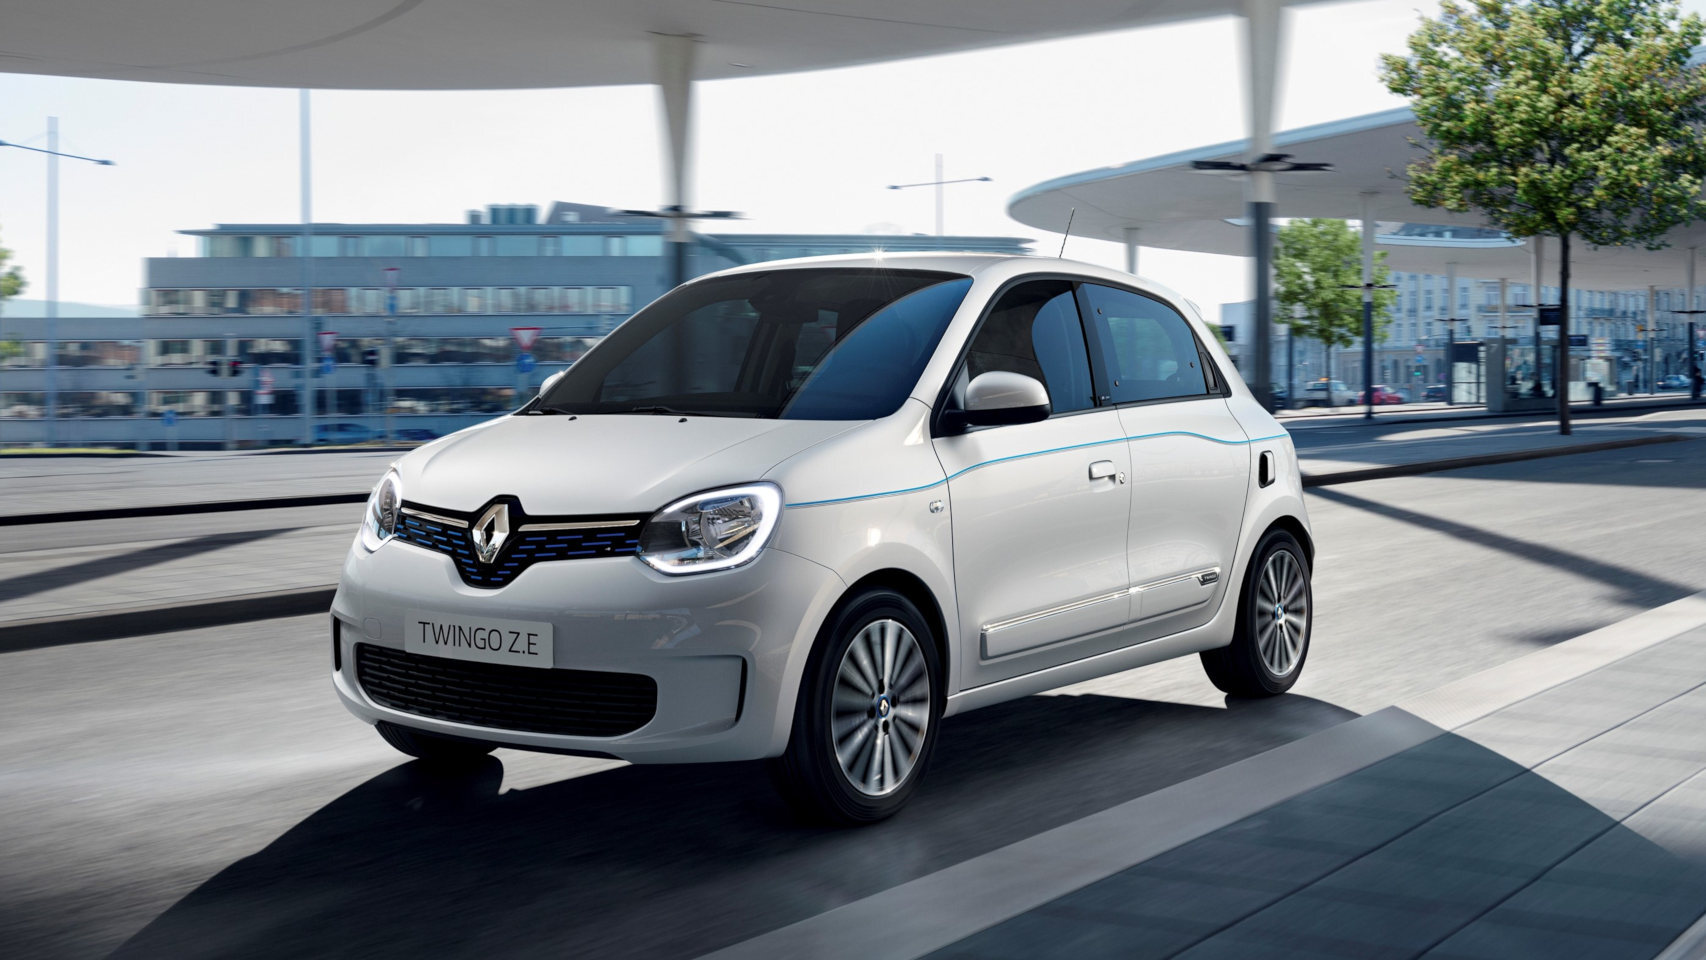 El Renault Twingo ahora es eléctrico el más pequeño, 250 km de